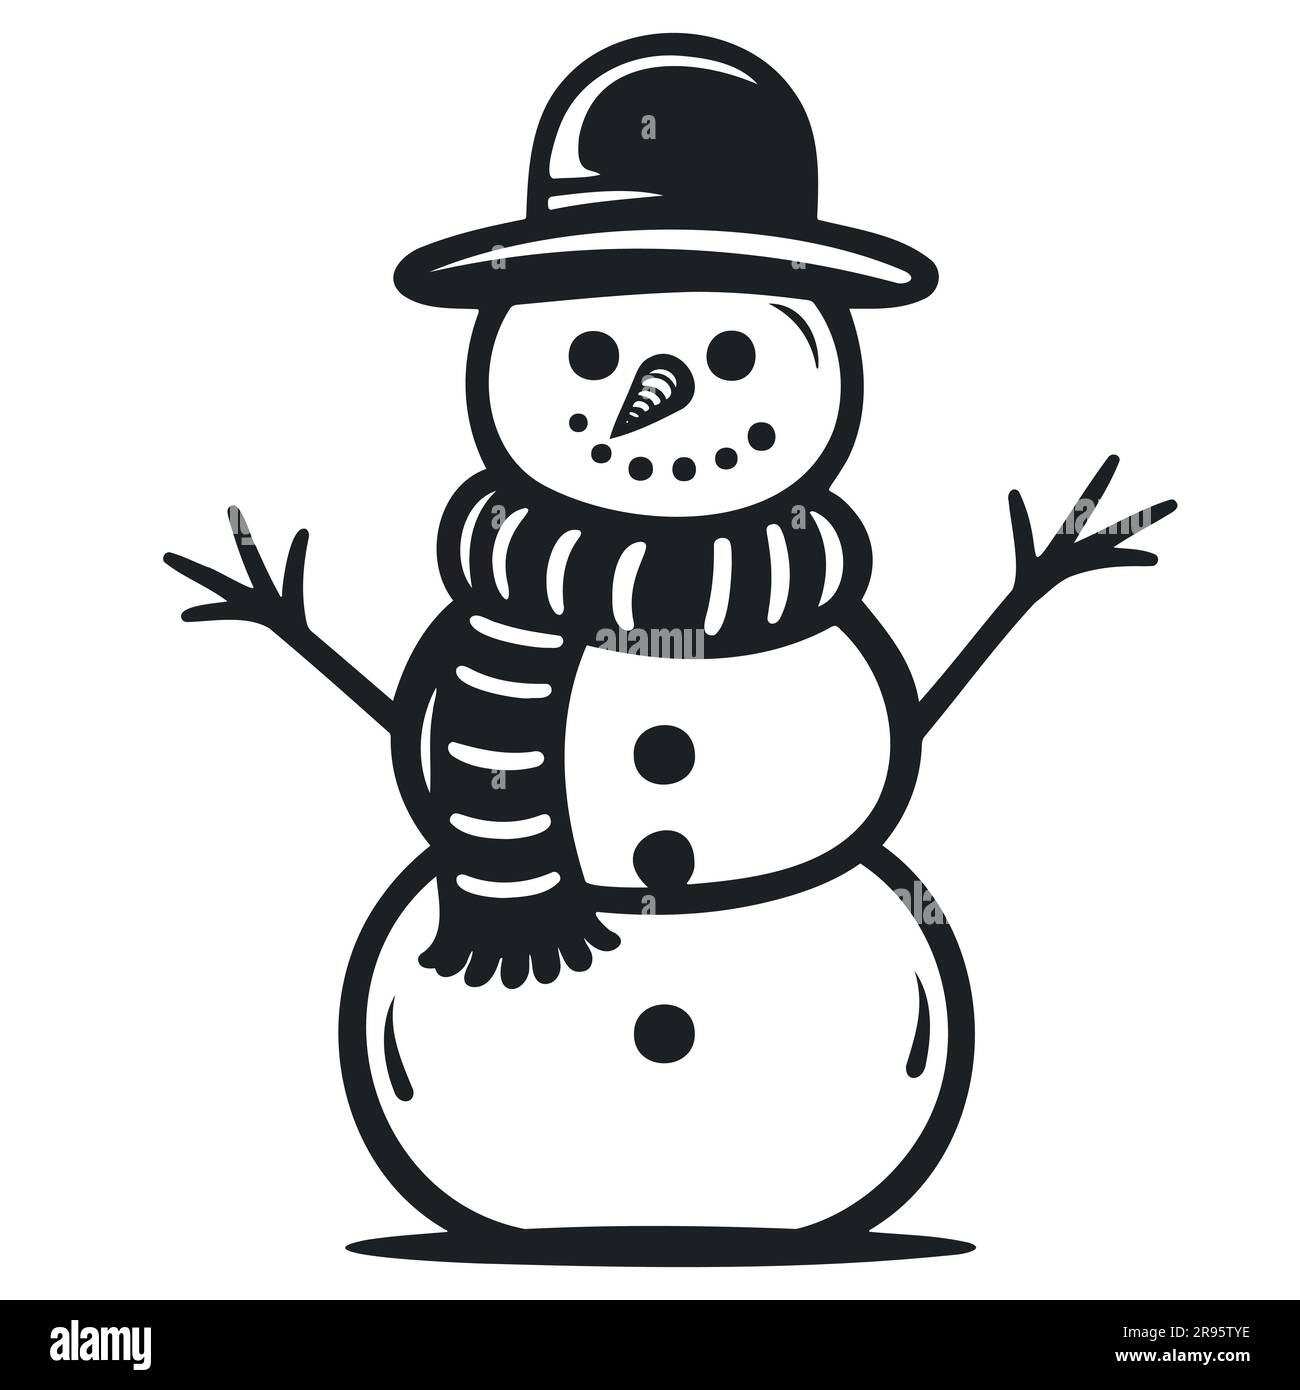 snowman outline